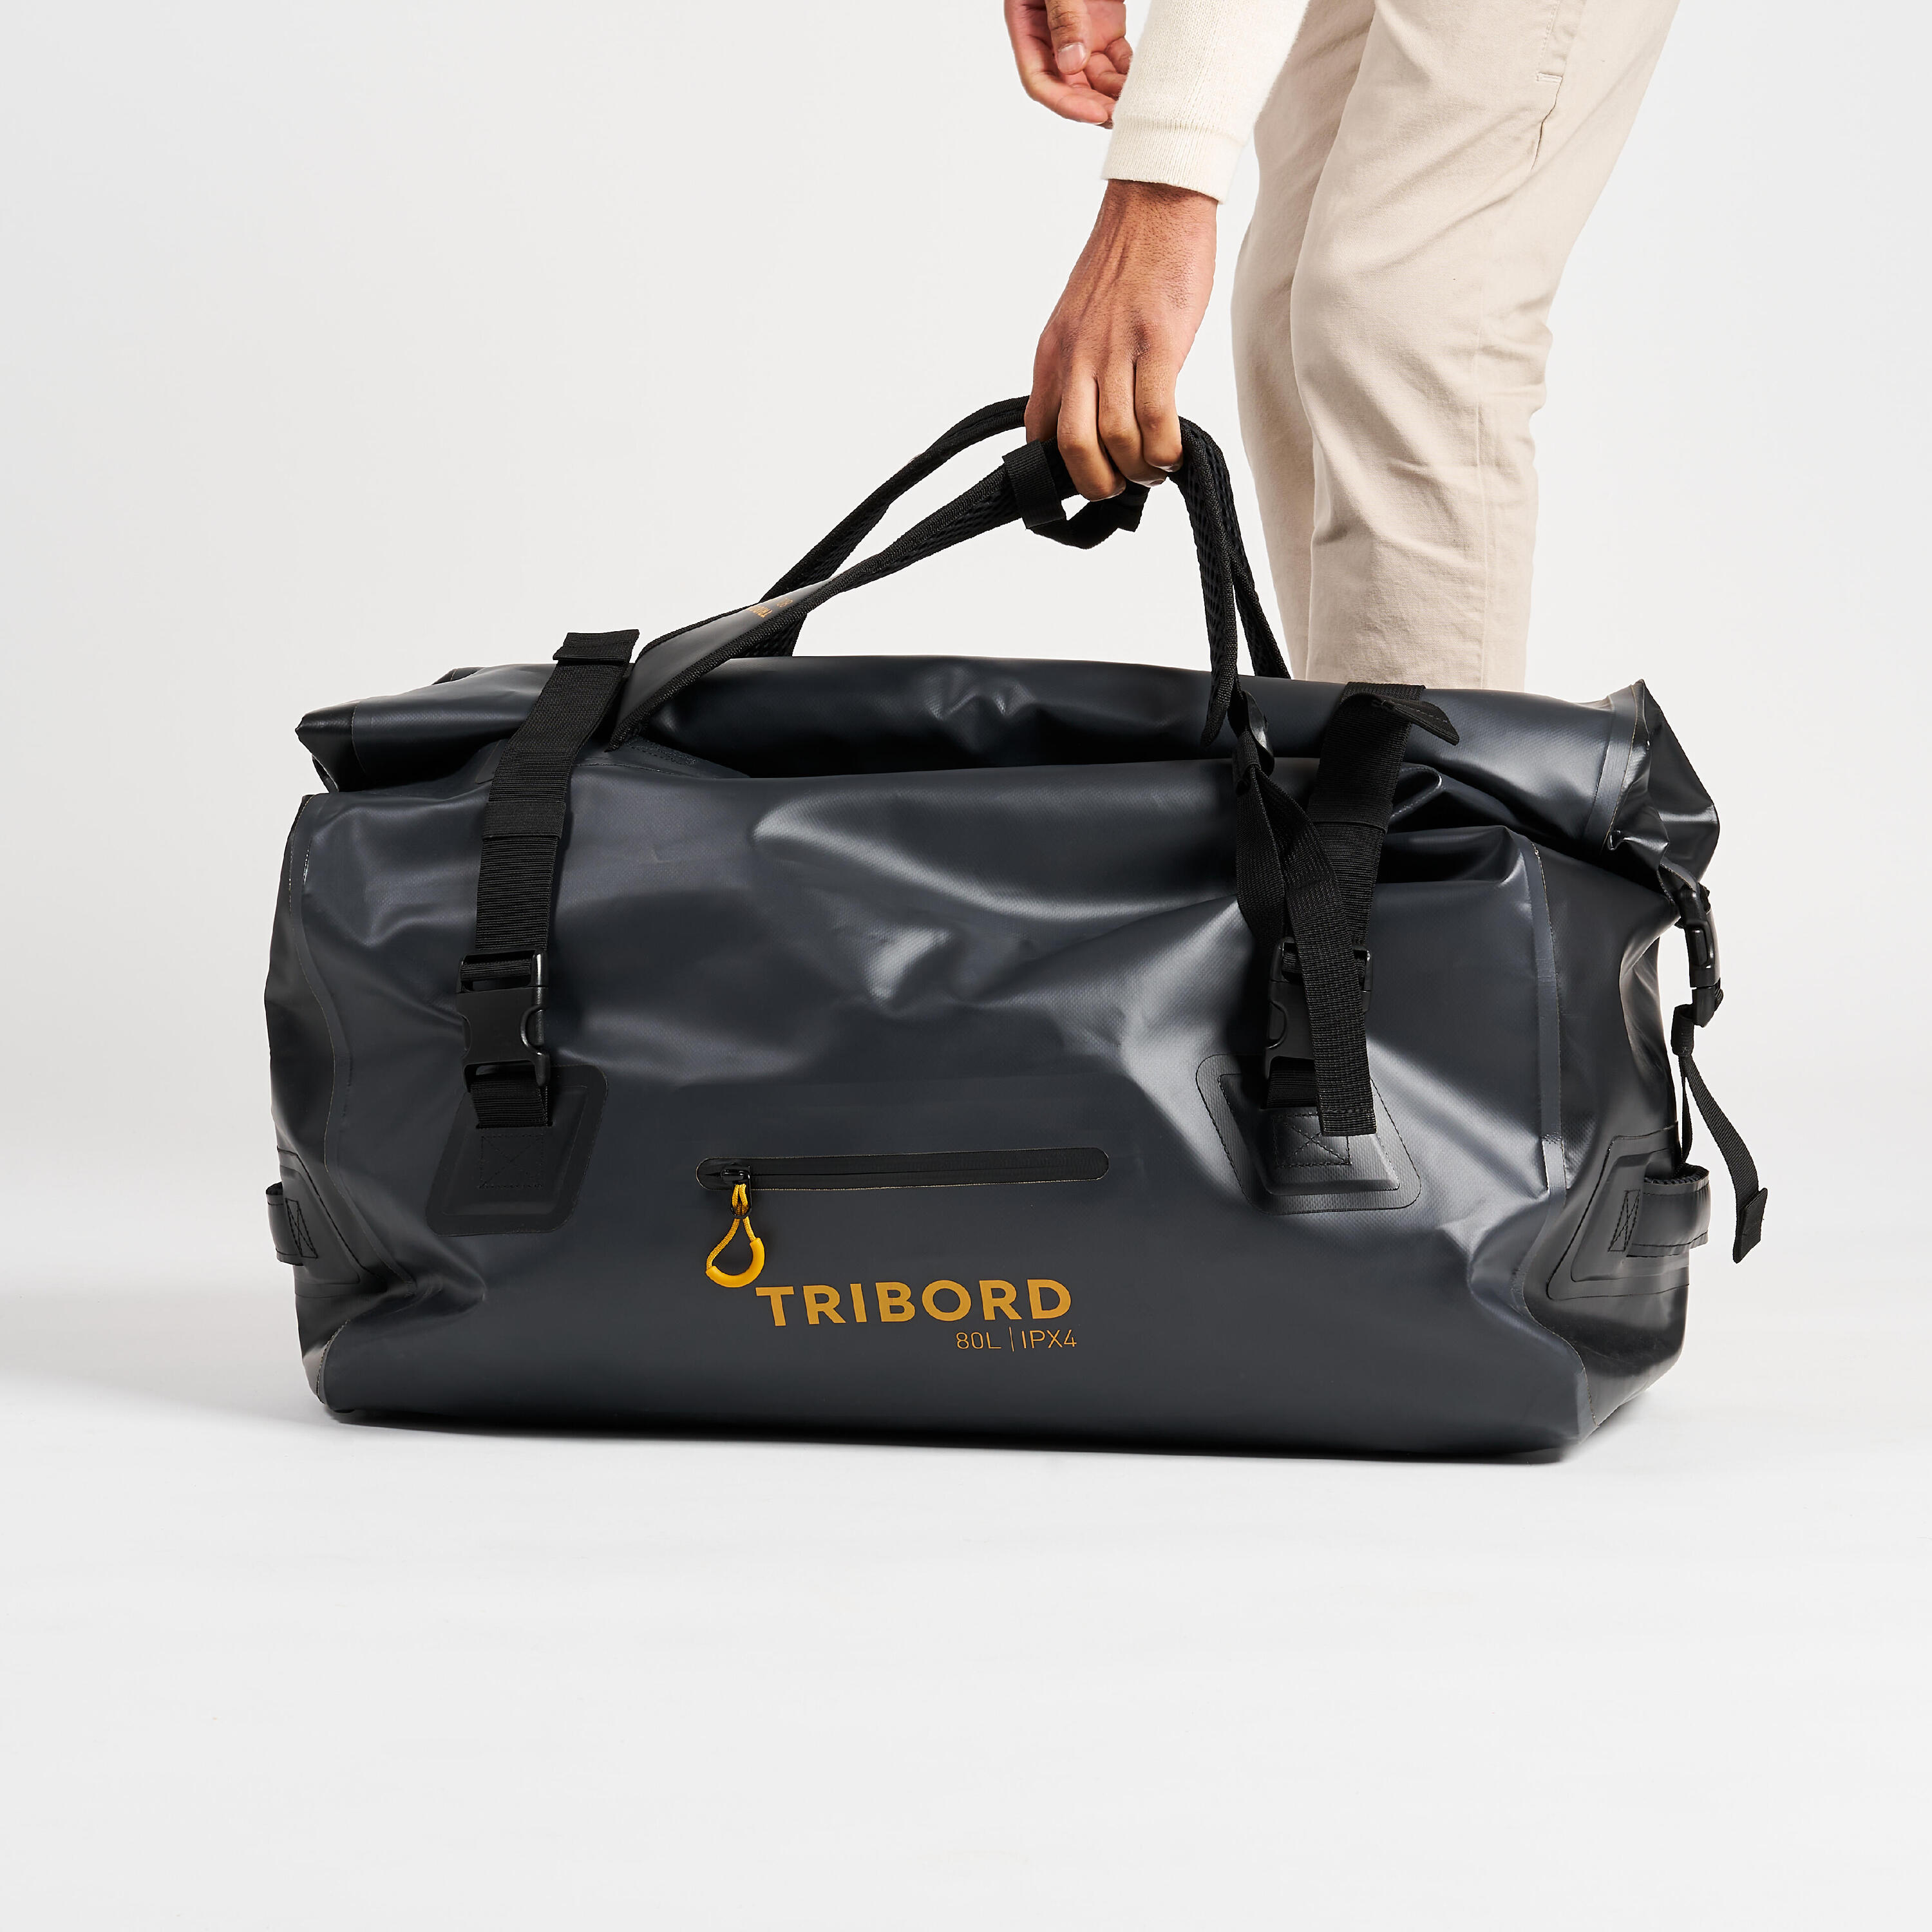 Waterproof duffle bag - 80 L travel bag Anthracite black 8/16